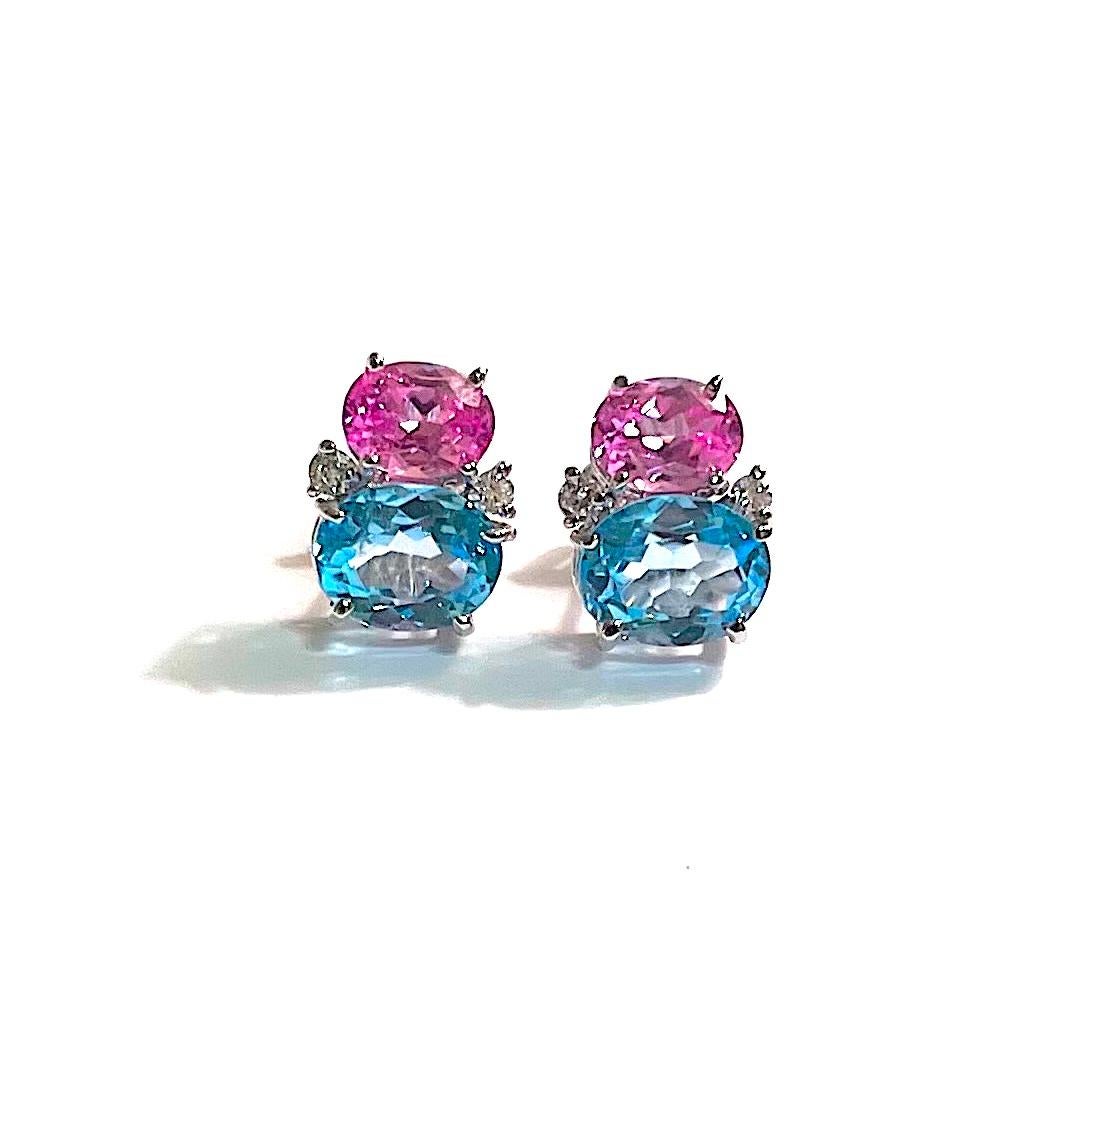 Mini GUM DROP-Ohrringe aus 18 Karat Weißgold mit facettiertem rosa Topas (je ca. 2 Karat), facettiertem blauem Topas (je ca. 3 Karat) und 4 Diamanten mit einem Gewicht von ~ 0,20 Karat.  

Spezifikationen: Höhe: 5/8